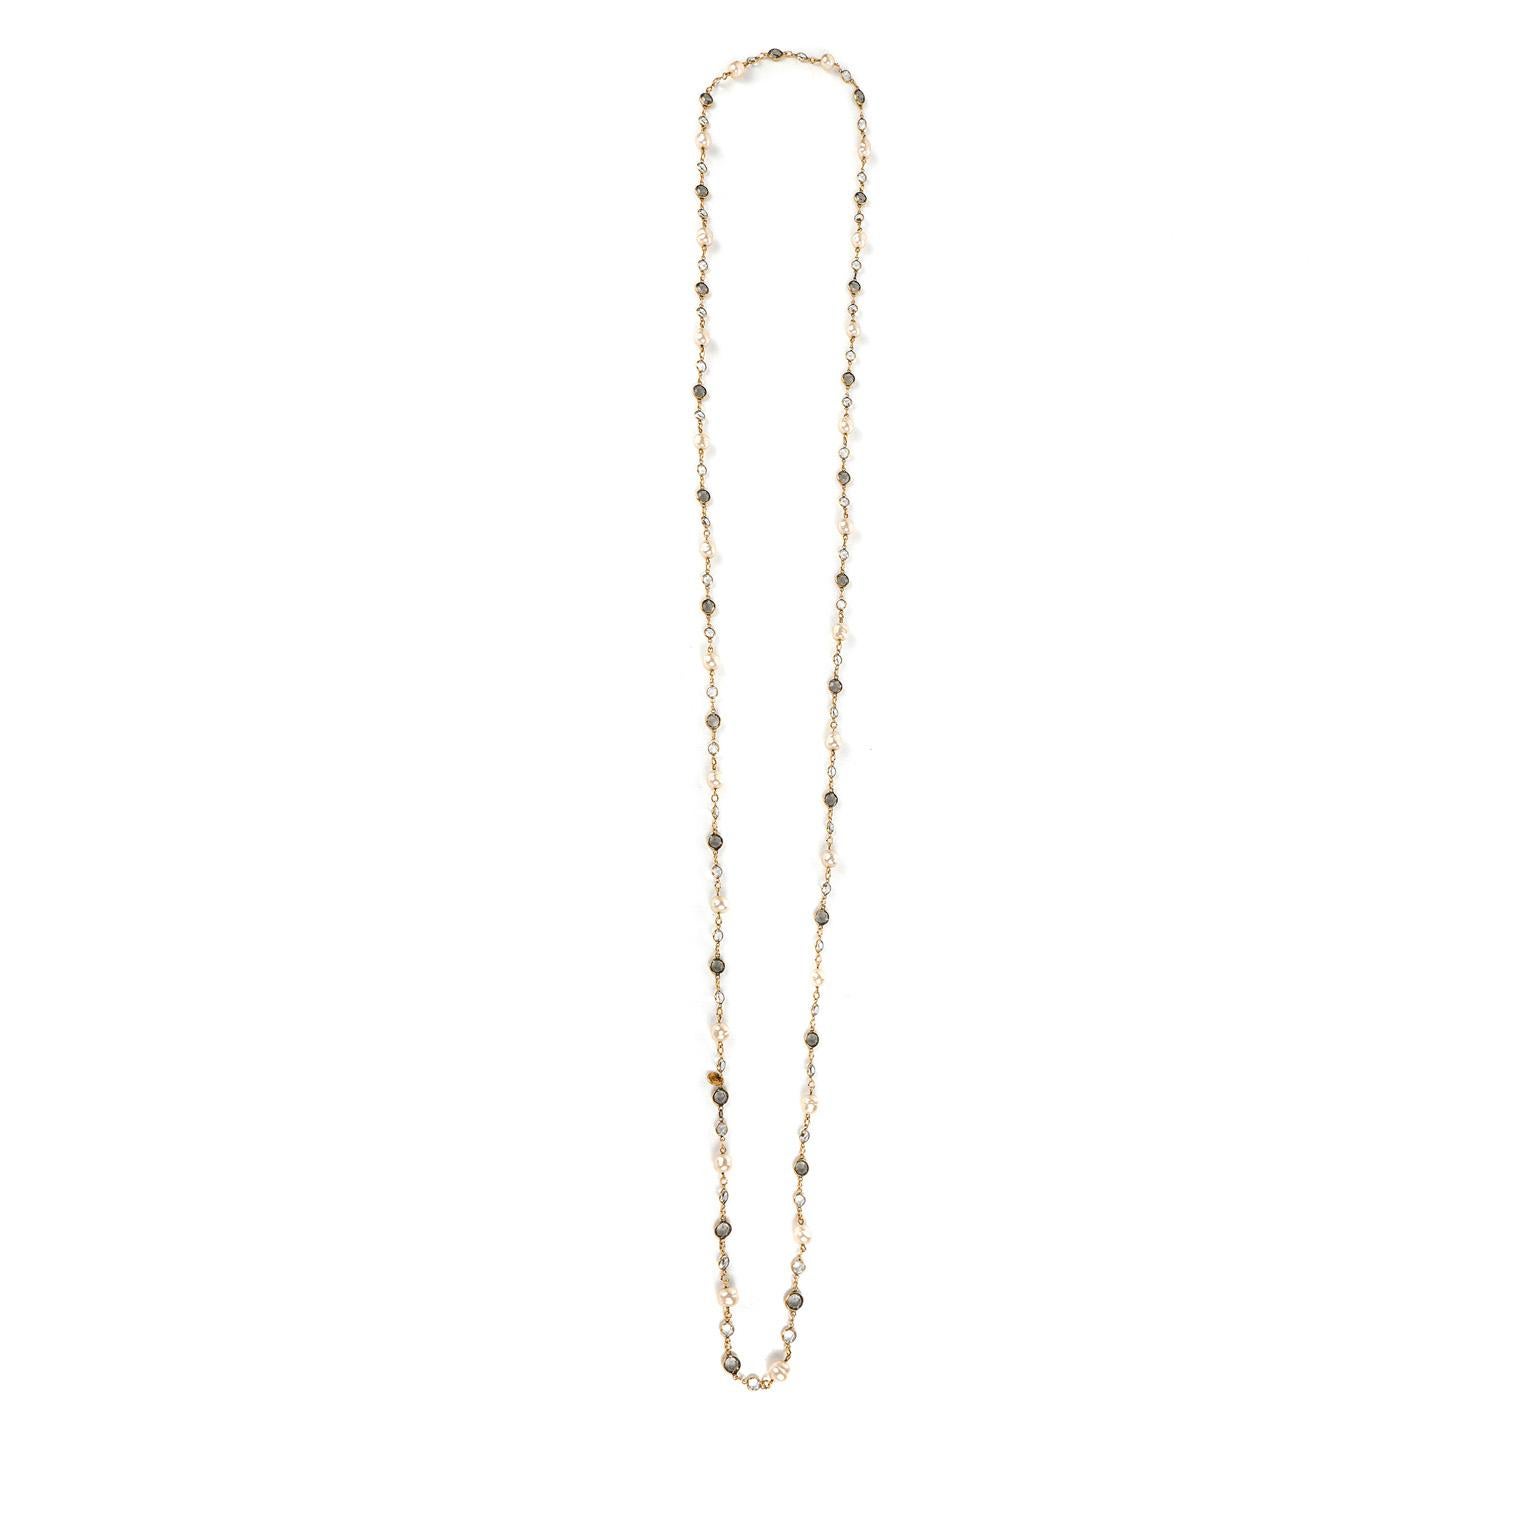 Diese authentische Chanel Perle und Kristall Opera Länge Halskette ist in schönem Zustand Form der 1980er Jahre.  Barocke Perlen werden durch runde, schlichte Kristalle getrennt und entlang einer Oper aus 24 Karat vergoldeten Gliedern aufgereiht. 